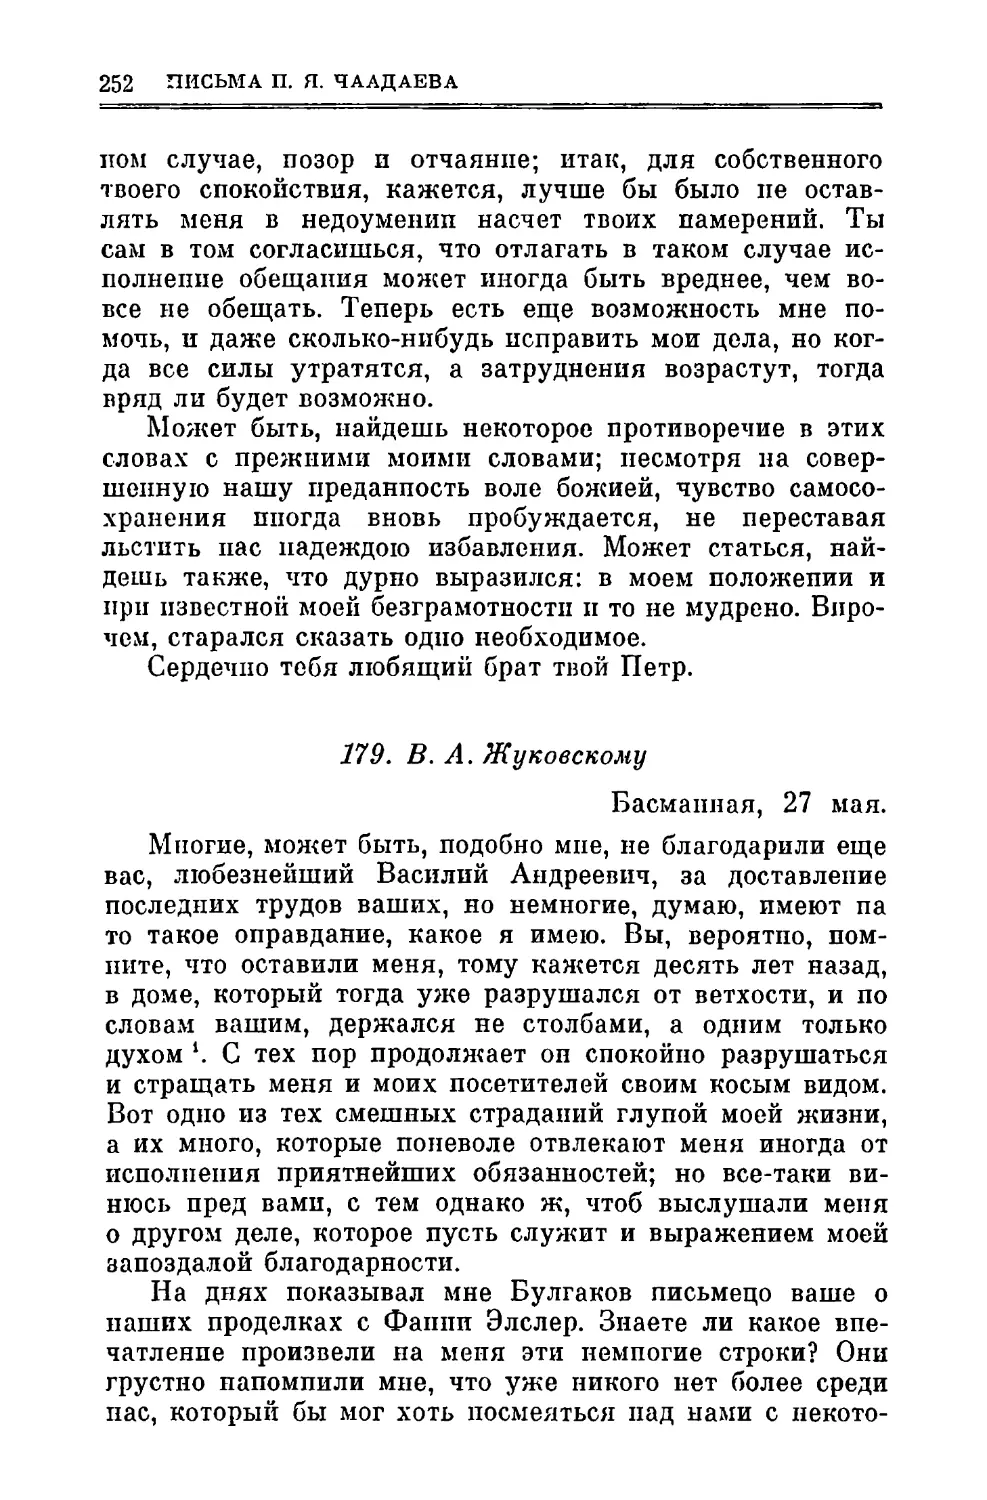 179. Жуковскому В.A. 27.V